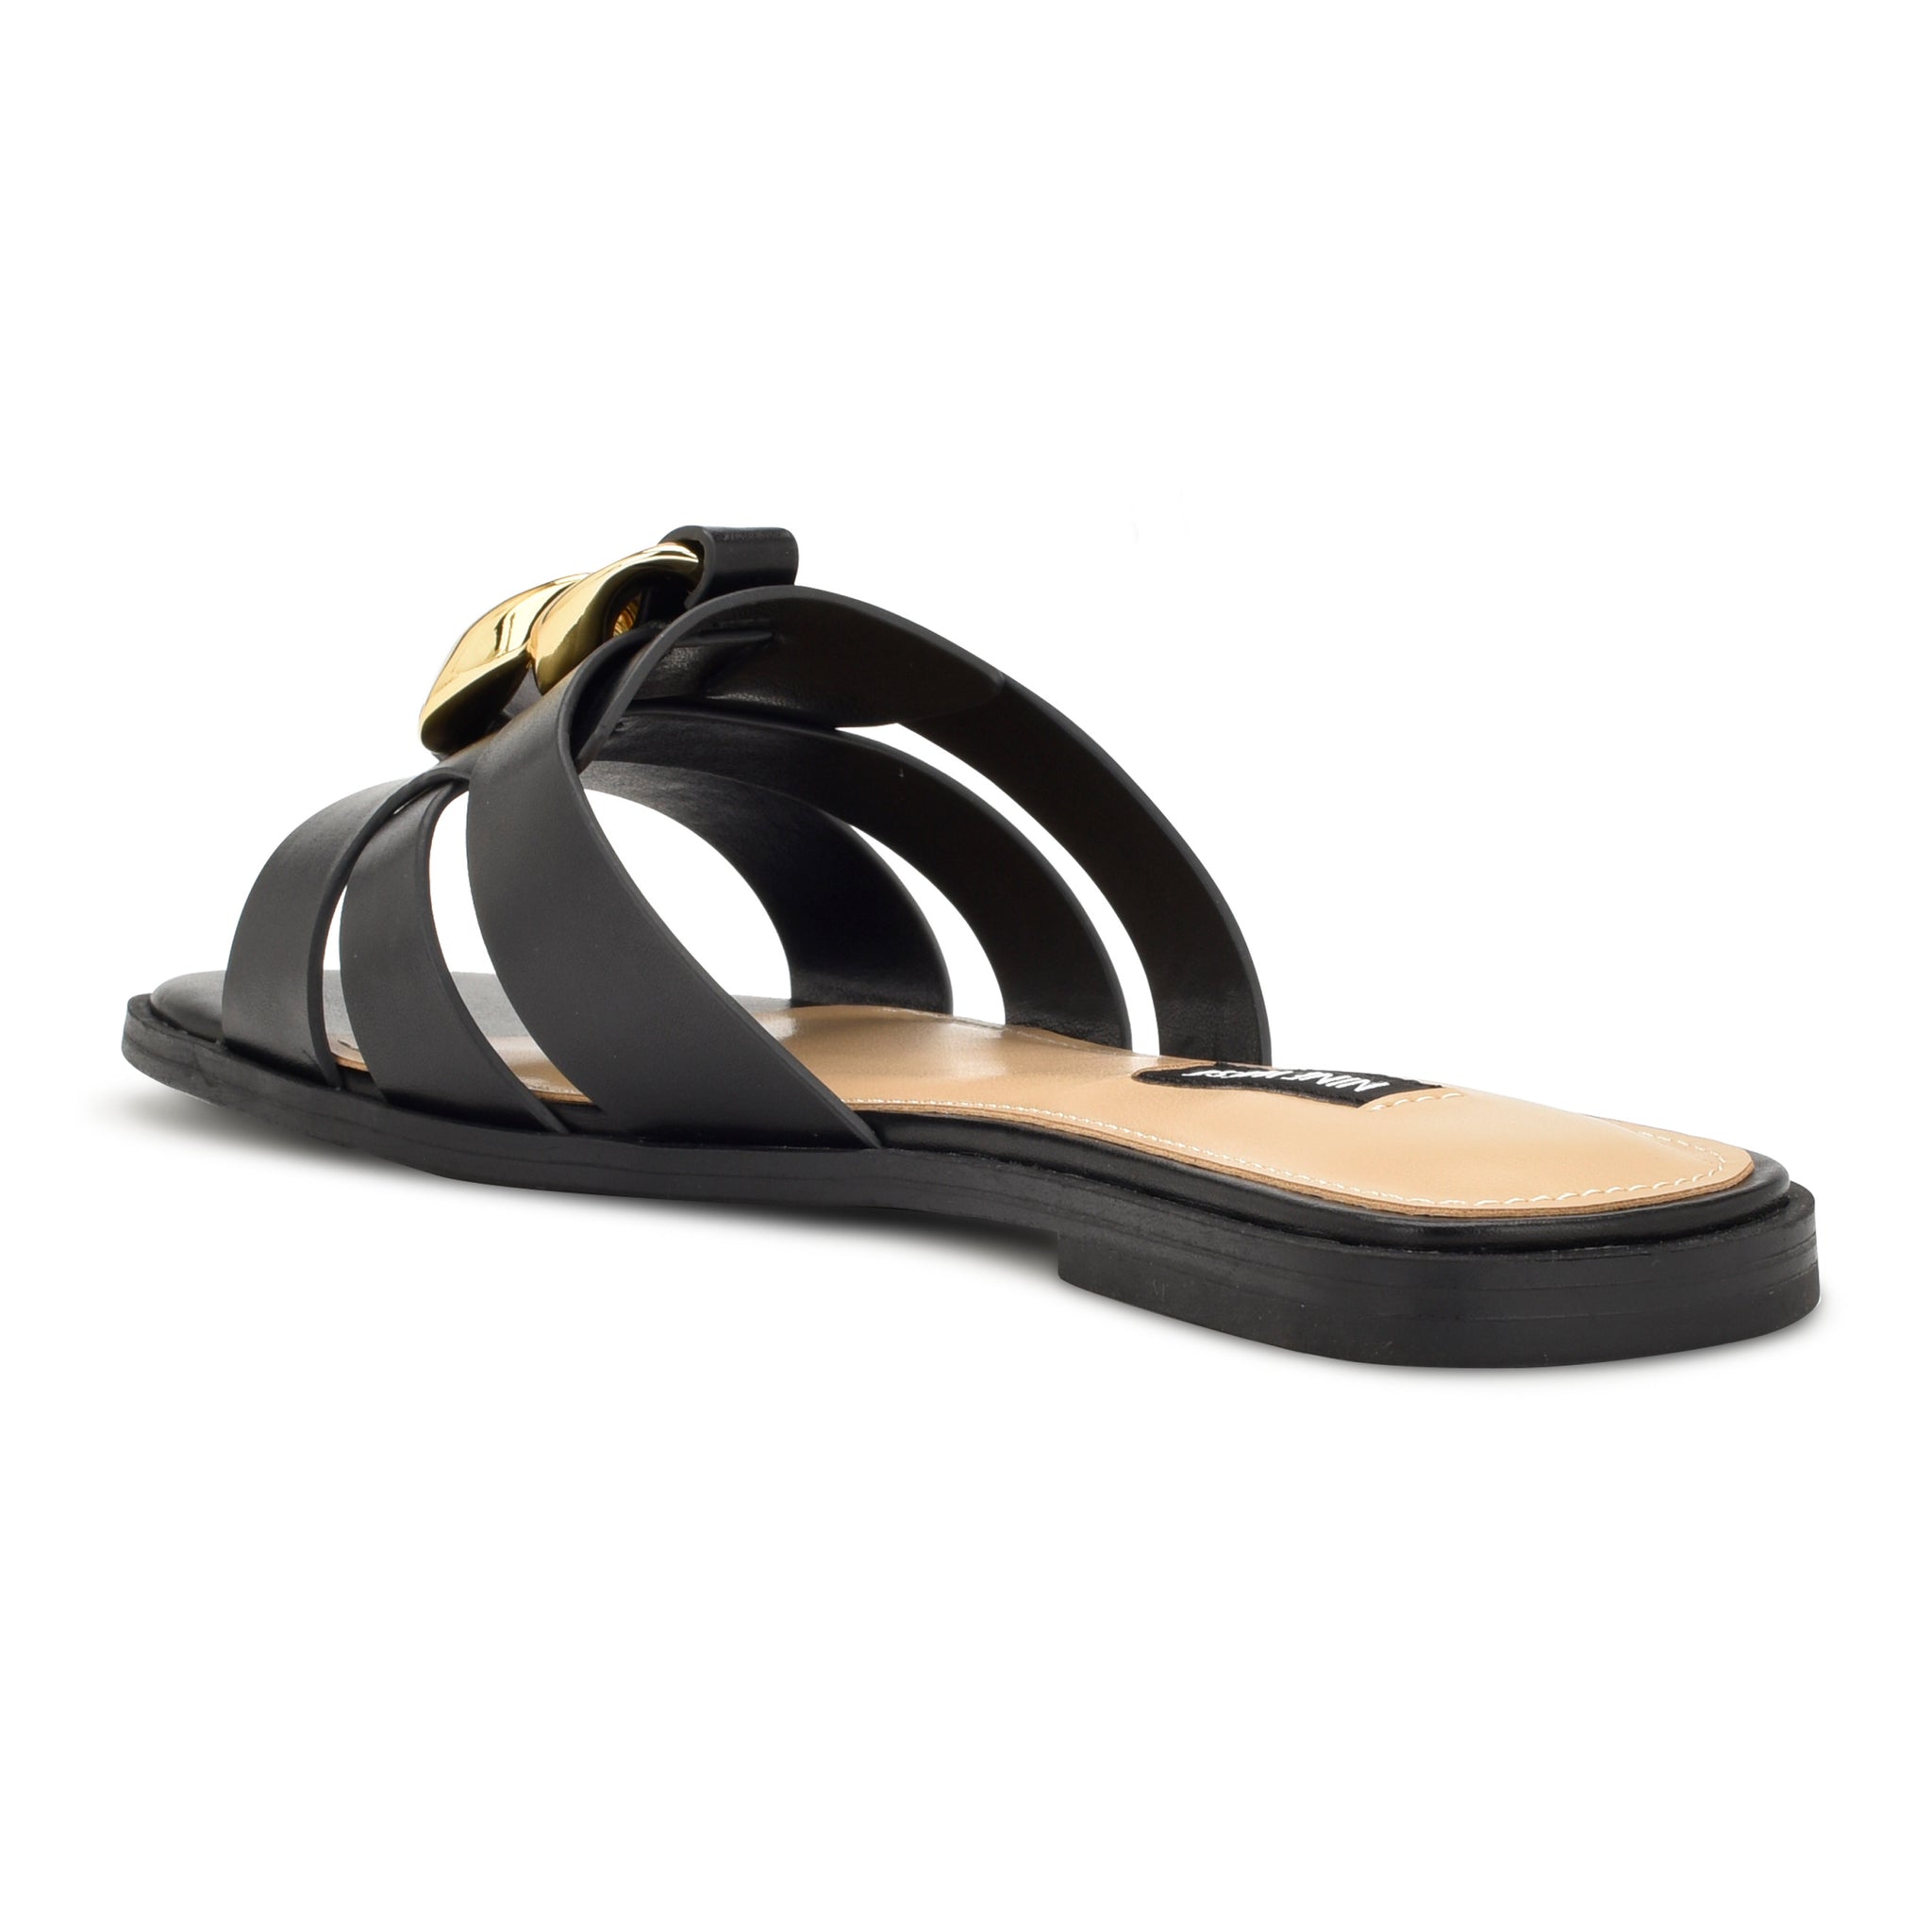 Ganlee Flat Slide Sandals - Nine West